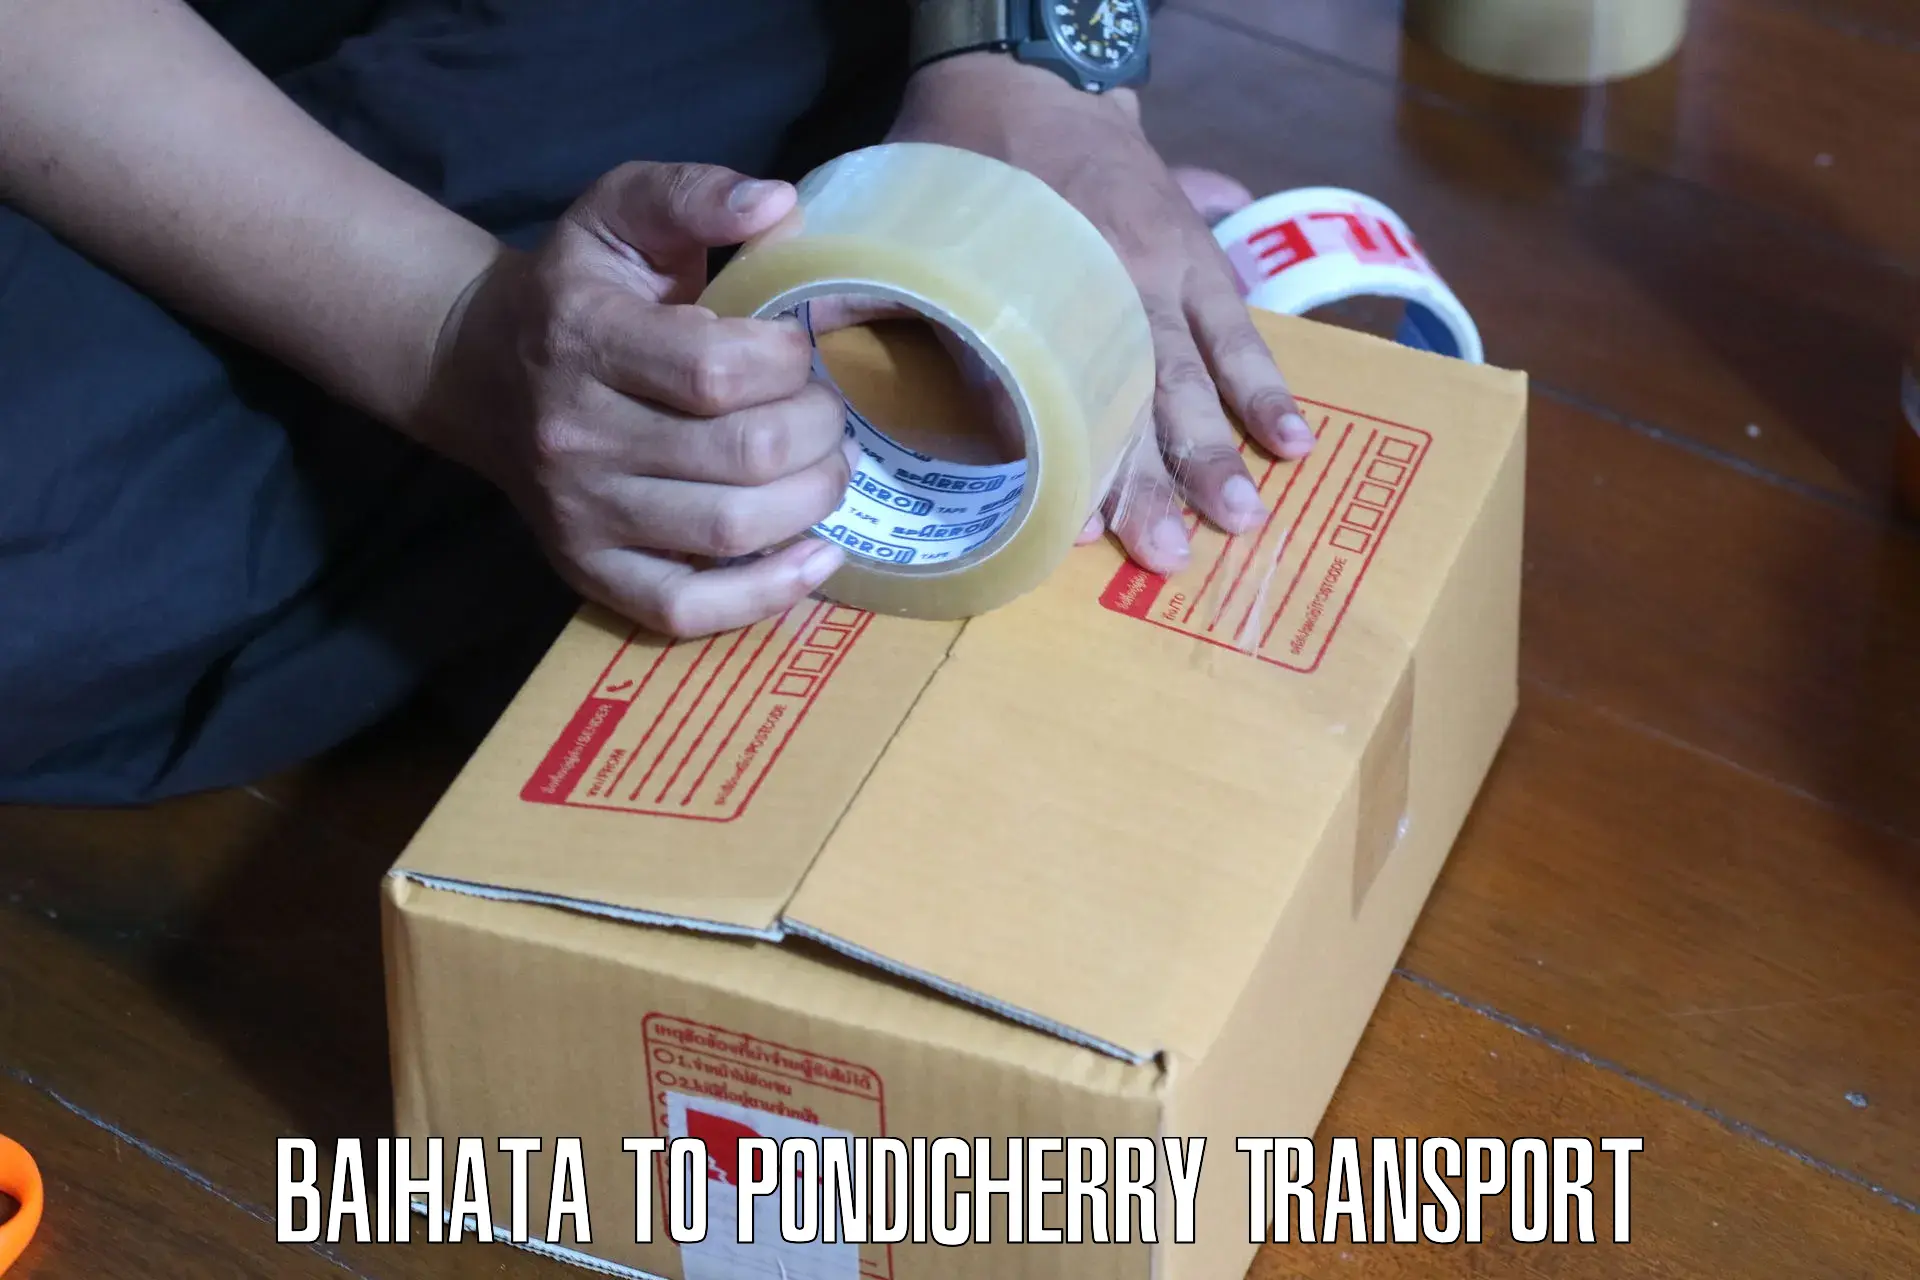 Two wheeler parcel service Baihata to Pondicherry